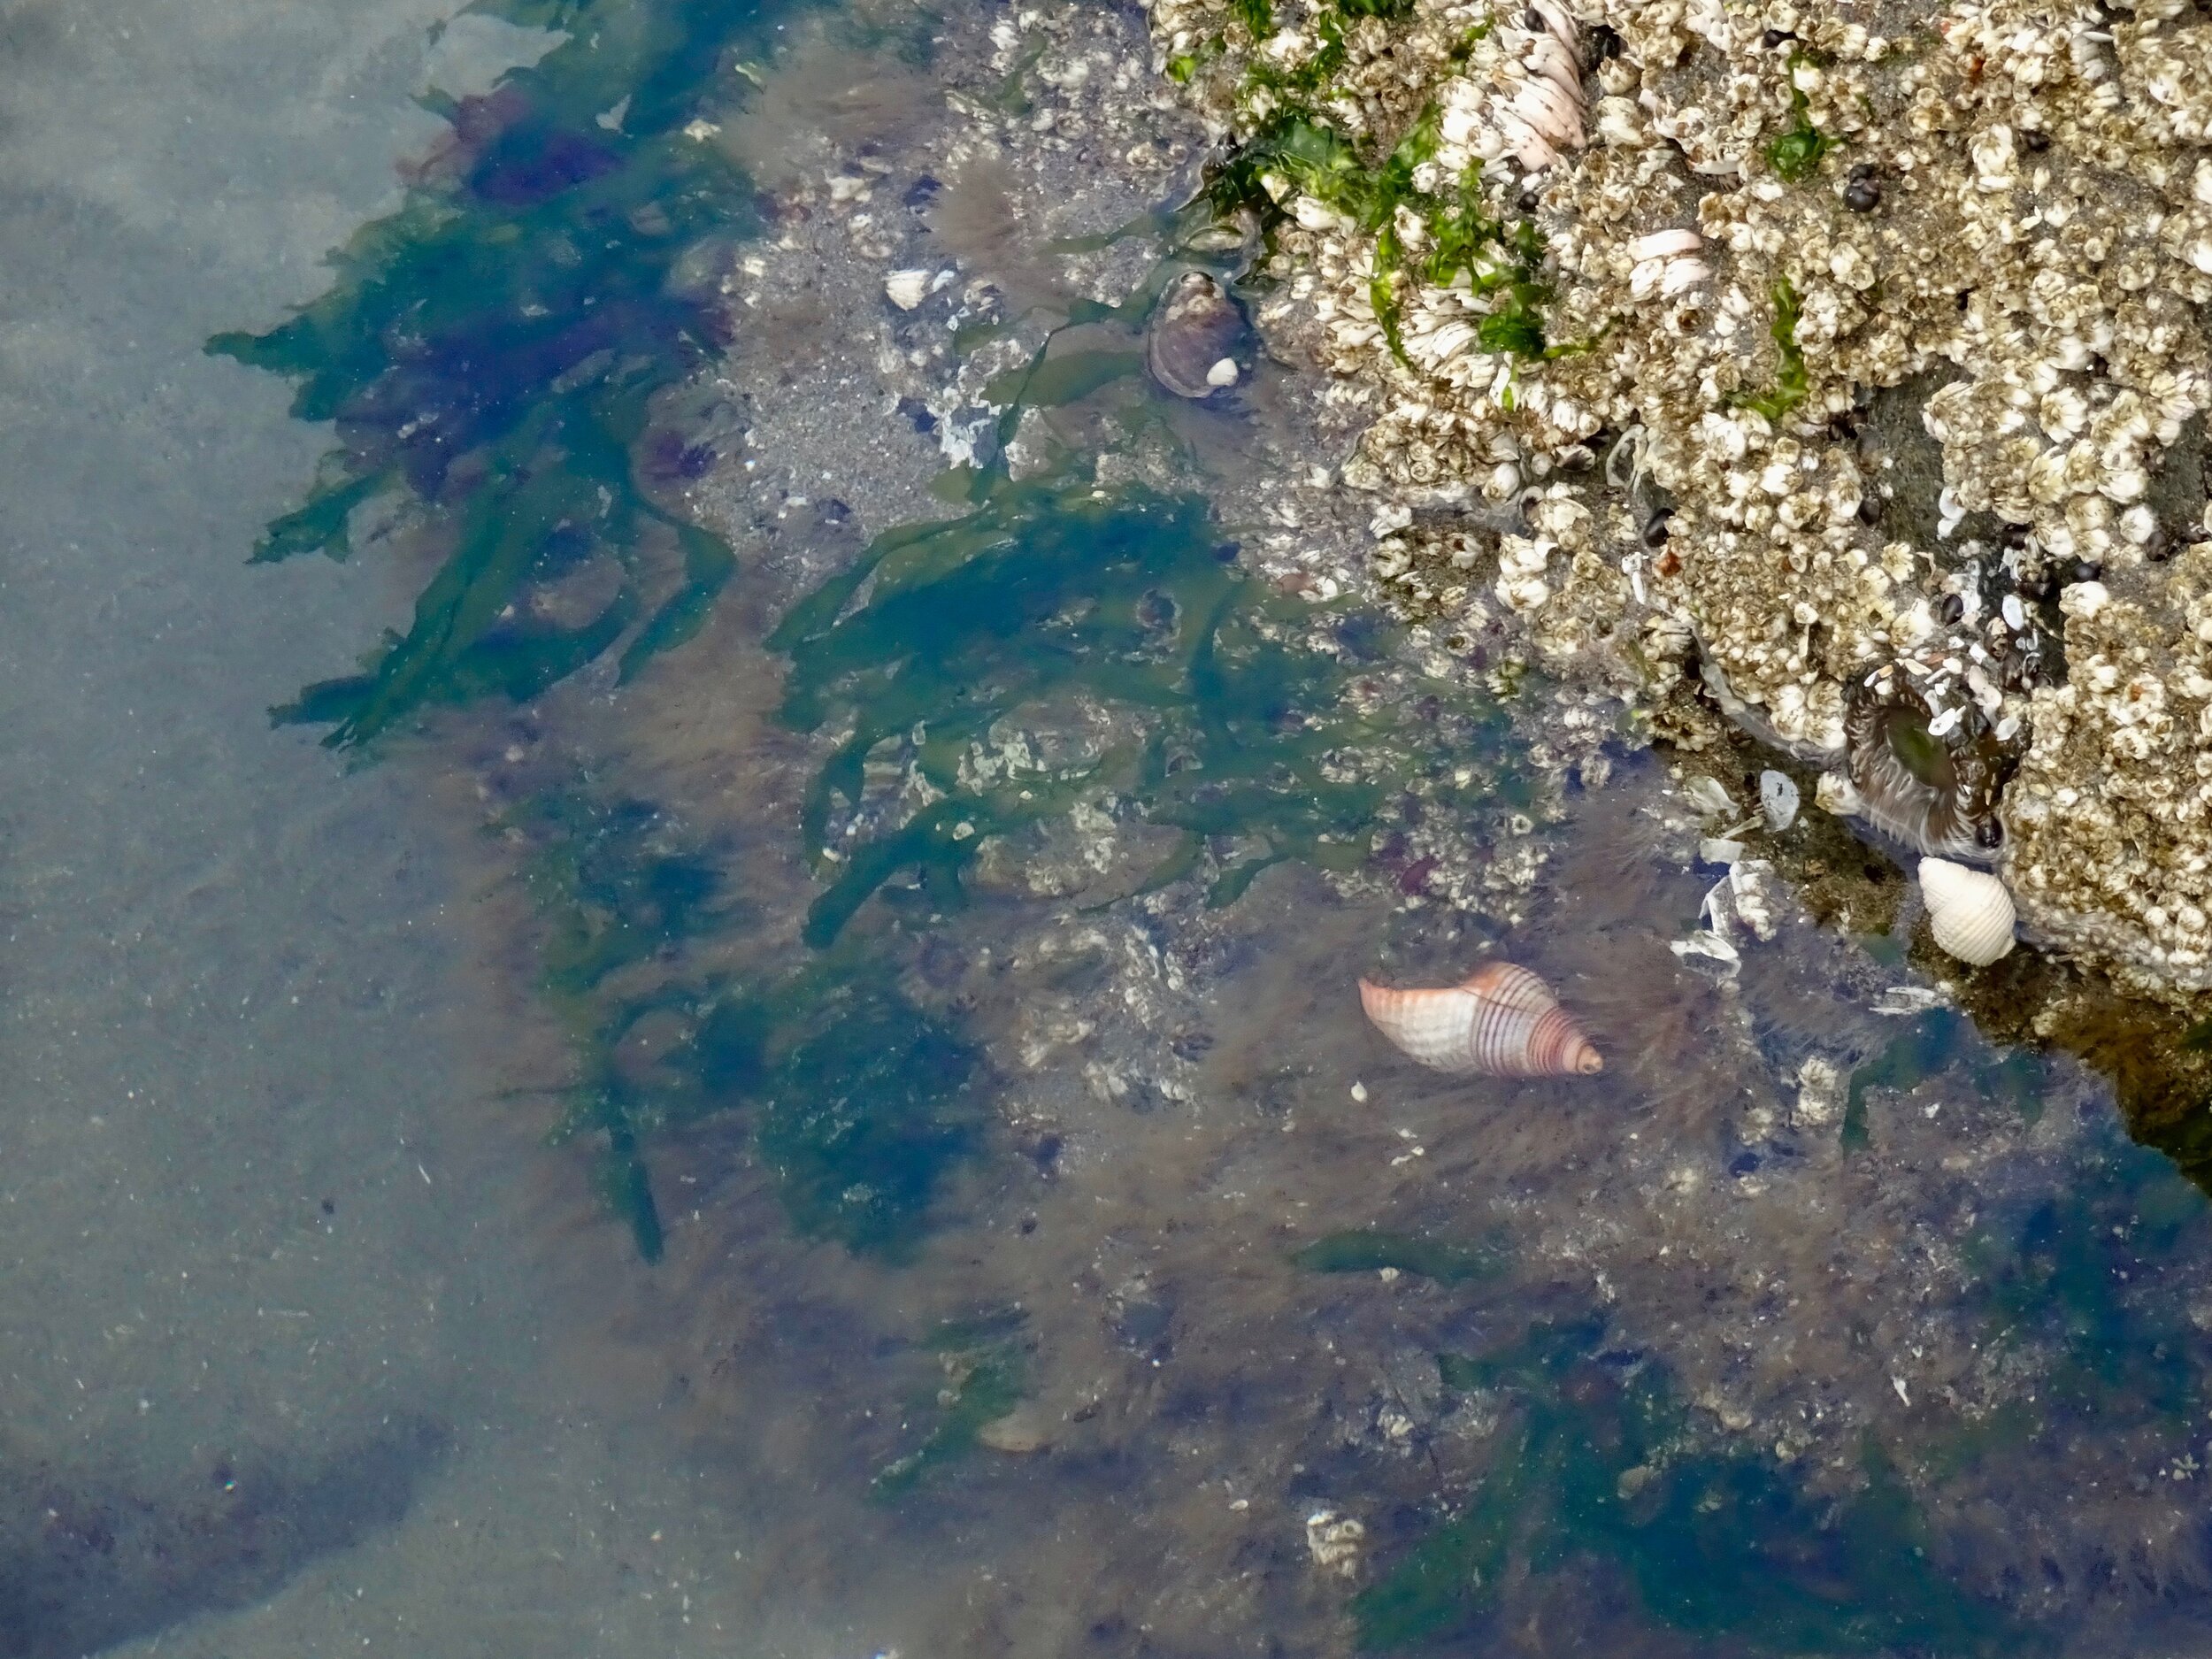 Shells, seaweed, barnacles, etc. tidepooling in Seaside, OR